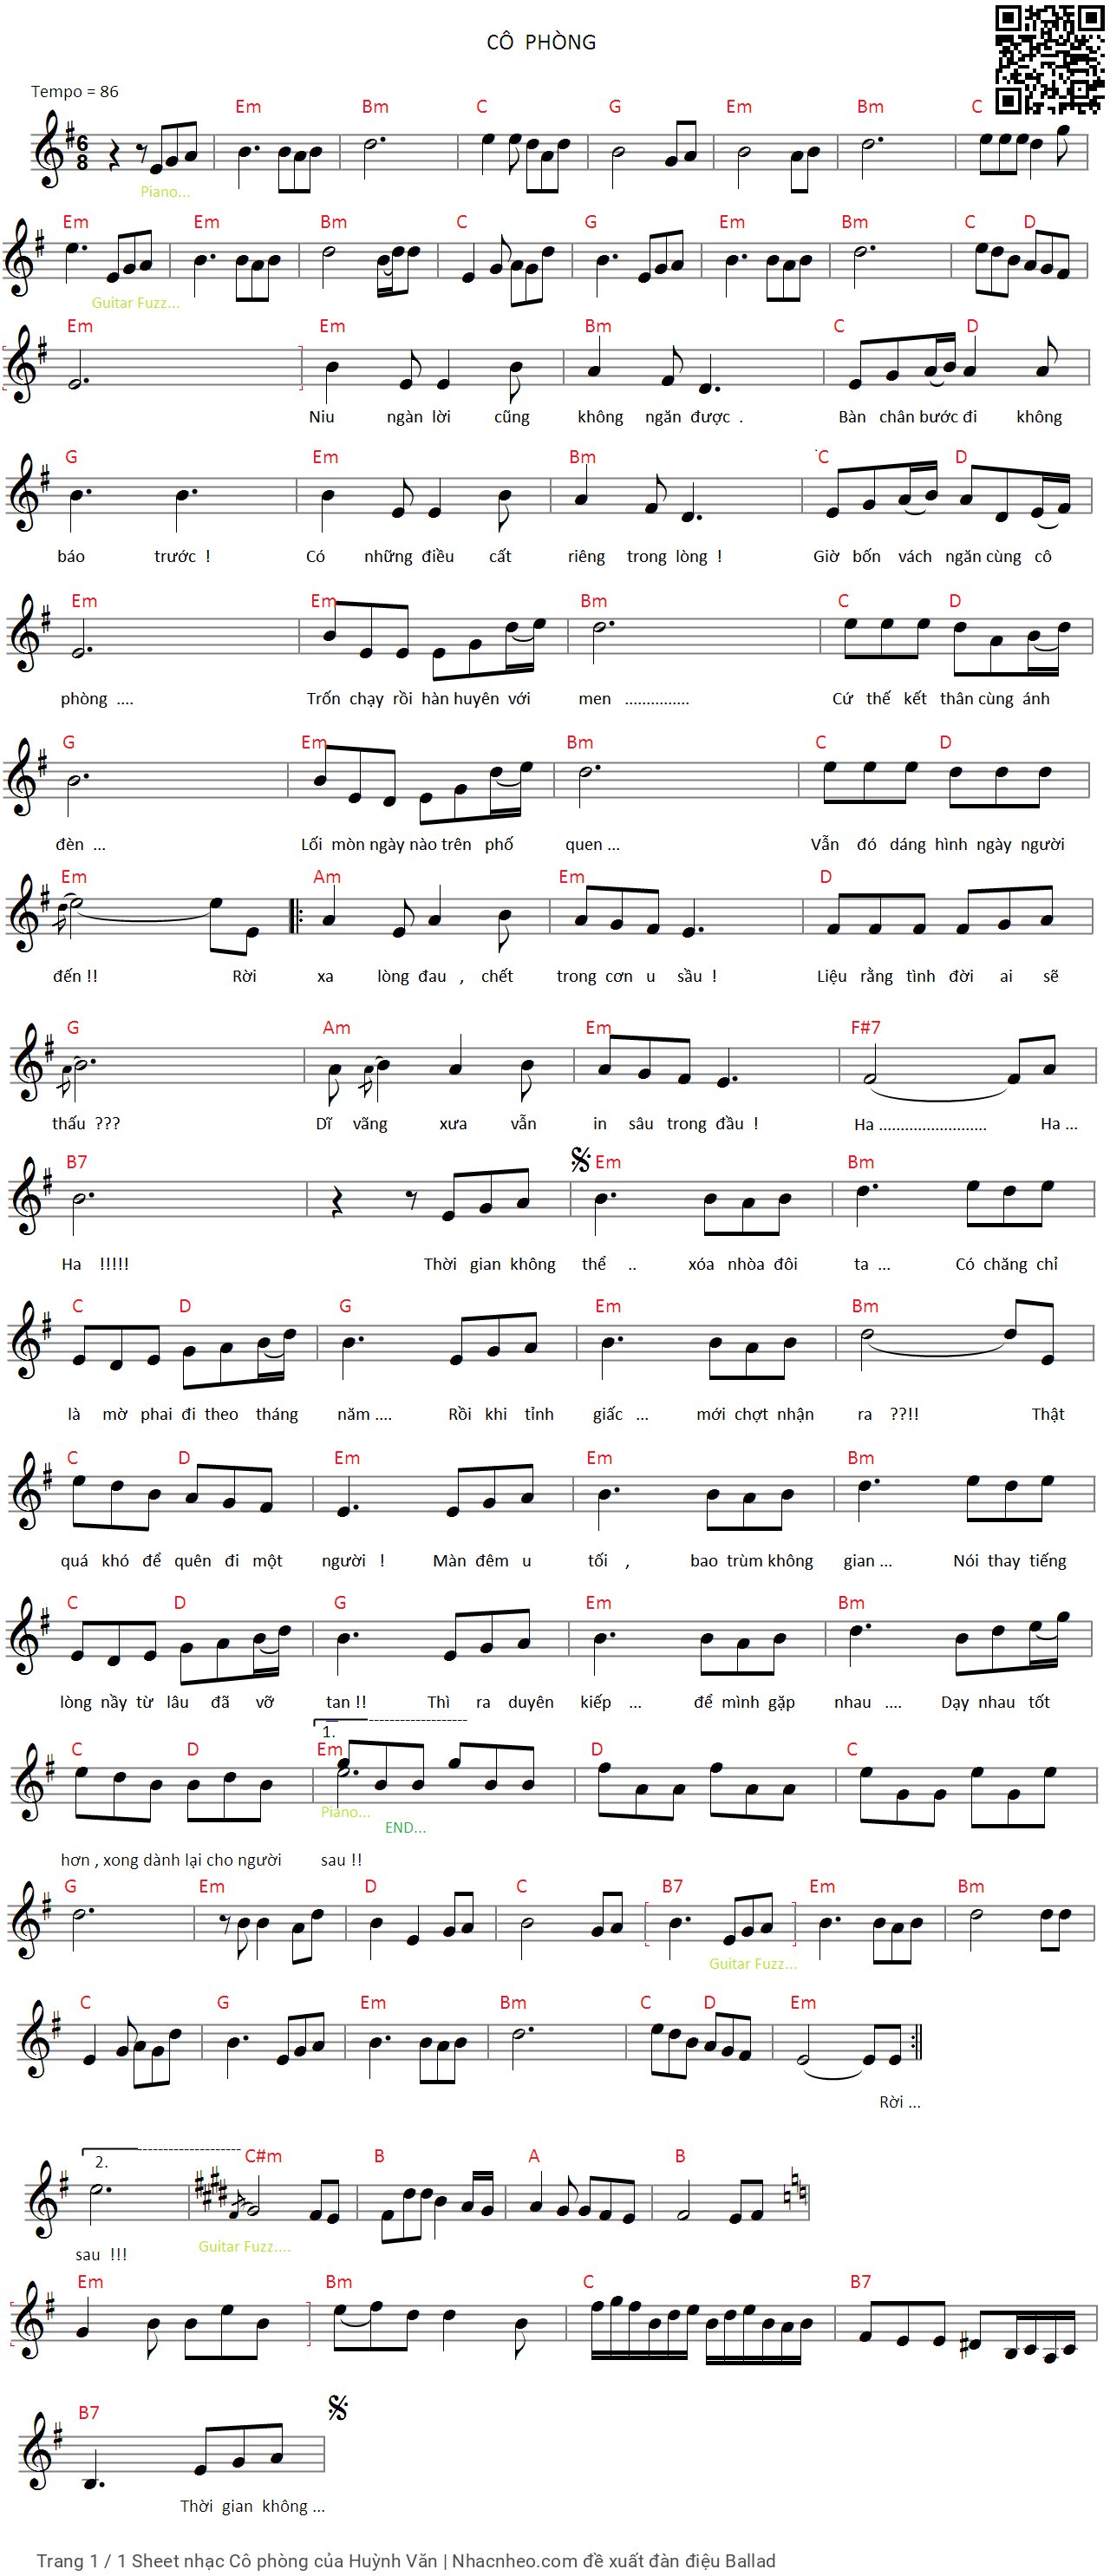 Trang 1 của Sheet nhạc PDF bài hát Cô phòng - Huỳnh Văn